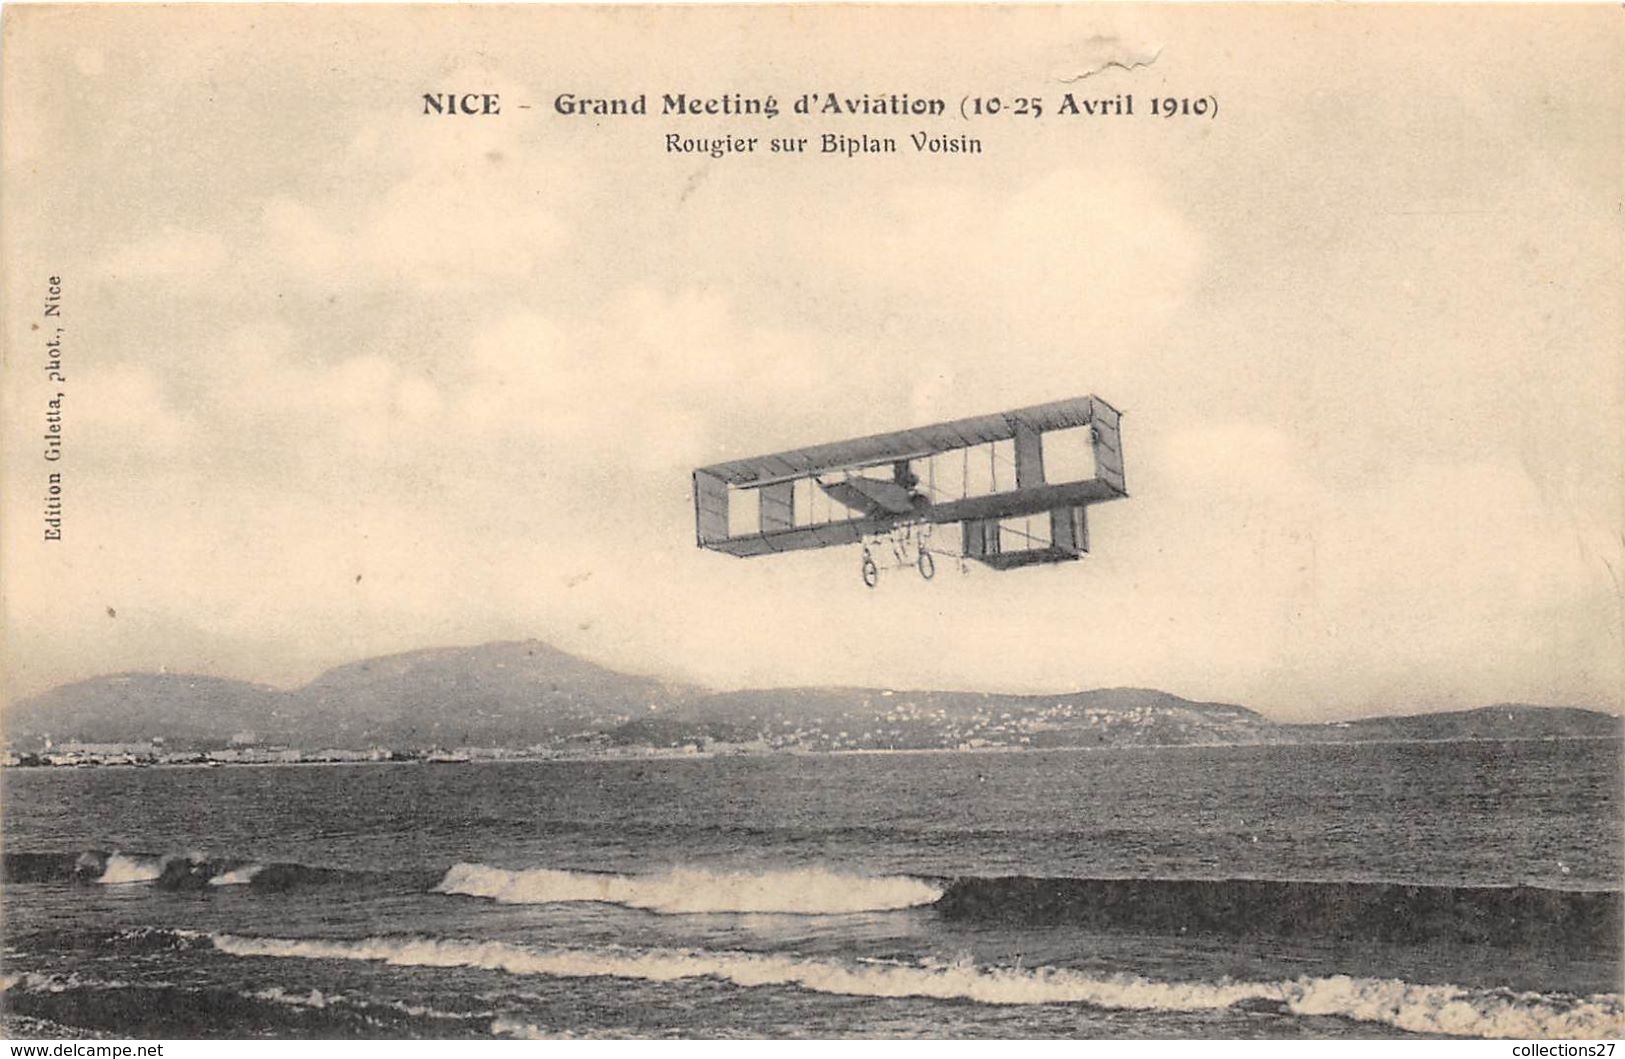 06-NICE- GRAND MEETING D'AVIATION, 10-25 AVRIEL 1910 - ROUGIER SUR BIPLAN VOISIN - Marchés, Fêtes